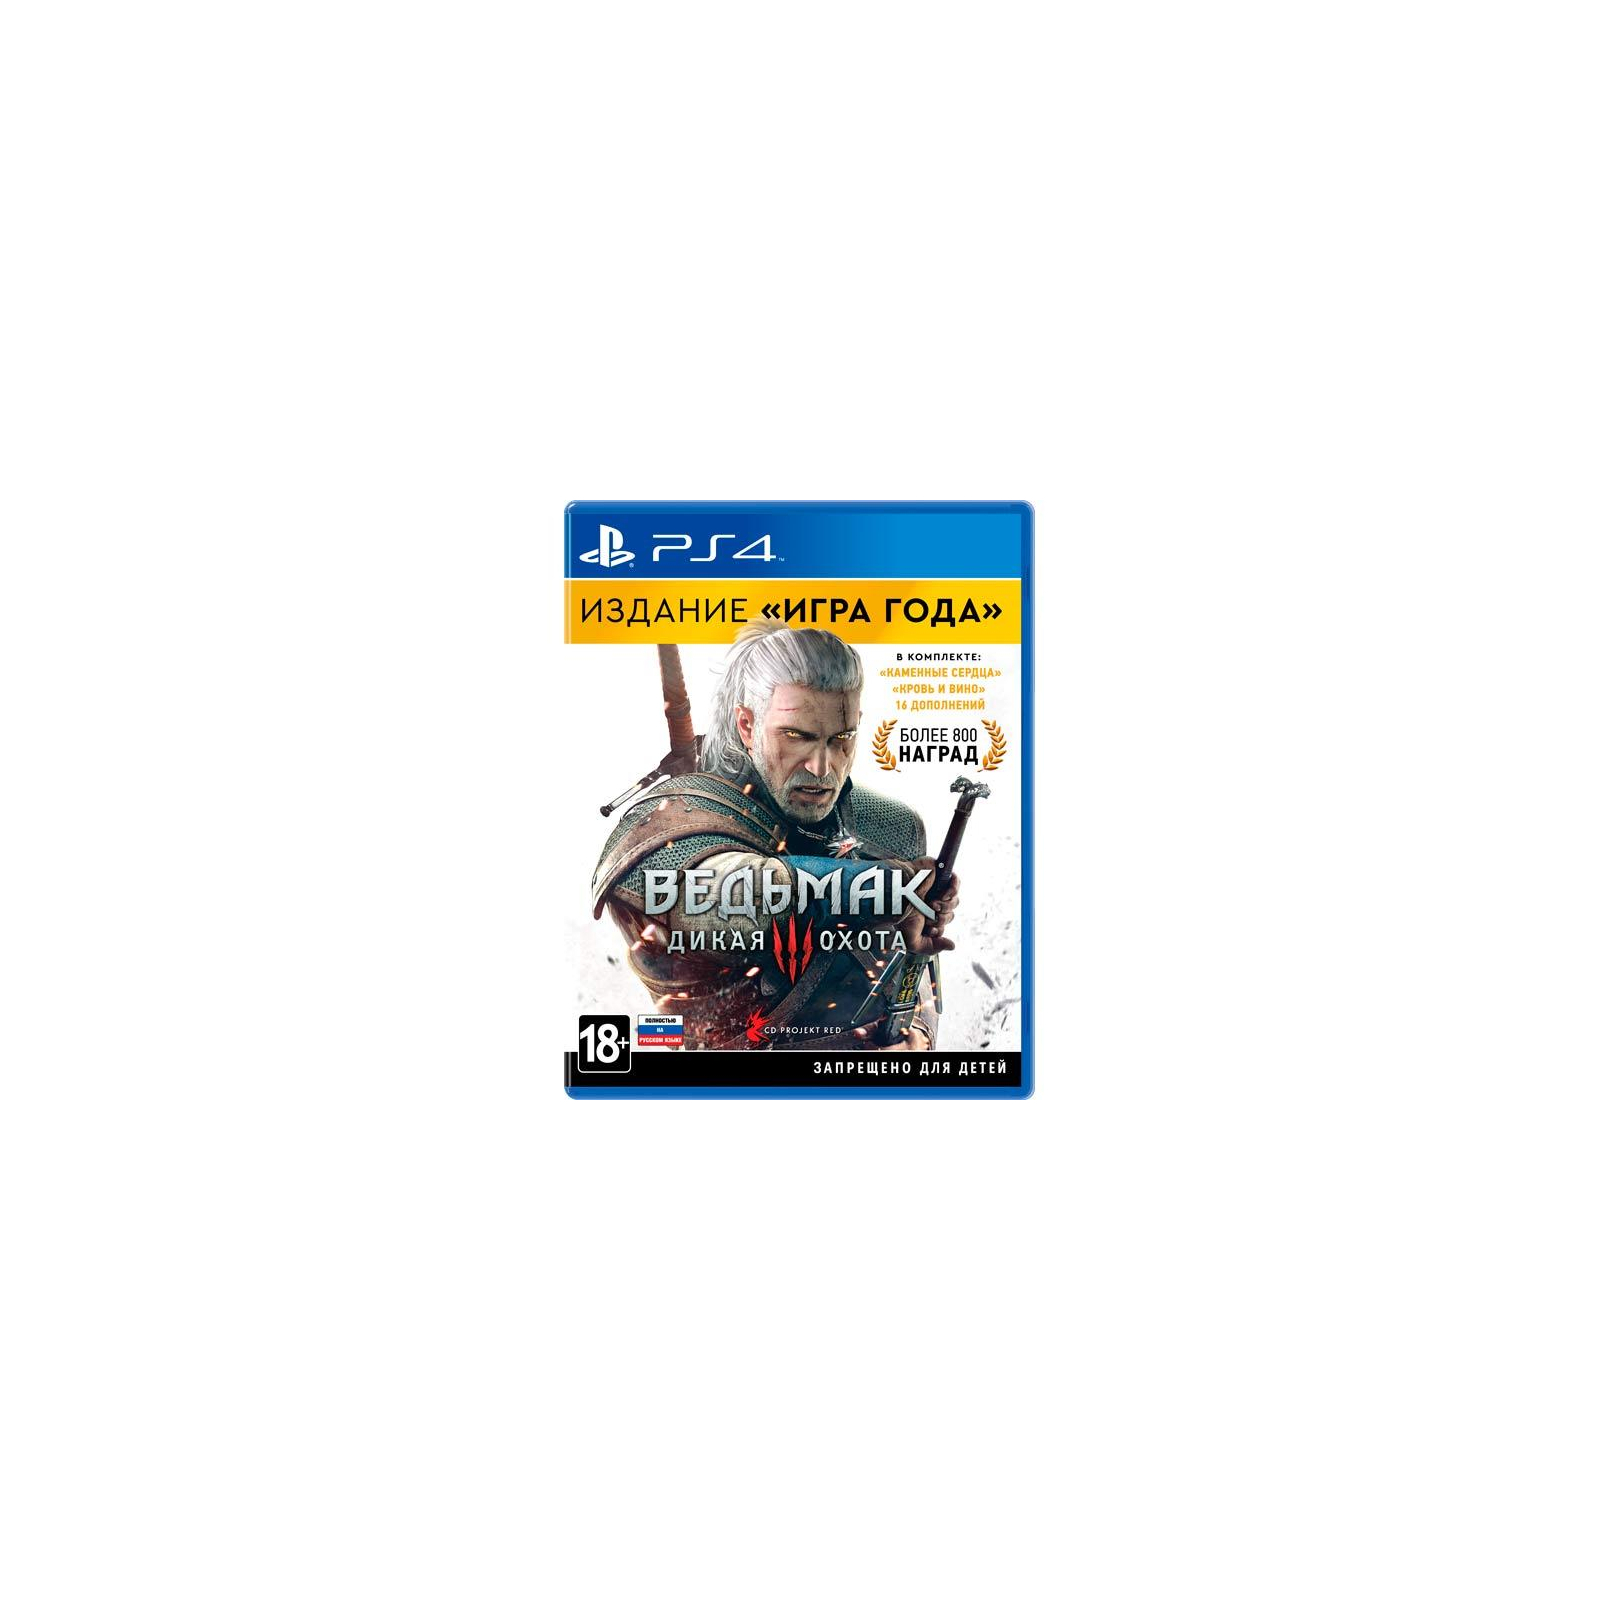 Гра Sony Ведьмак 3: Дикая Охота. Издание "Игра Года" [Blu-Ray диск] (PSIV324)